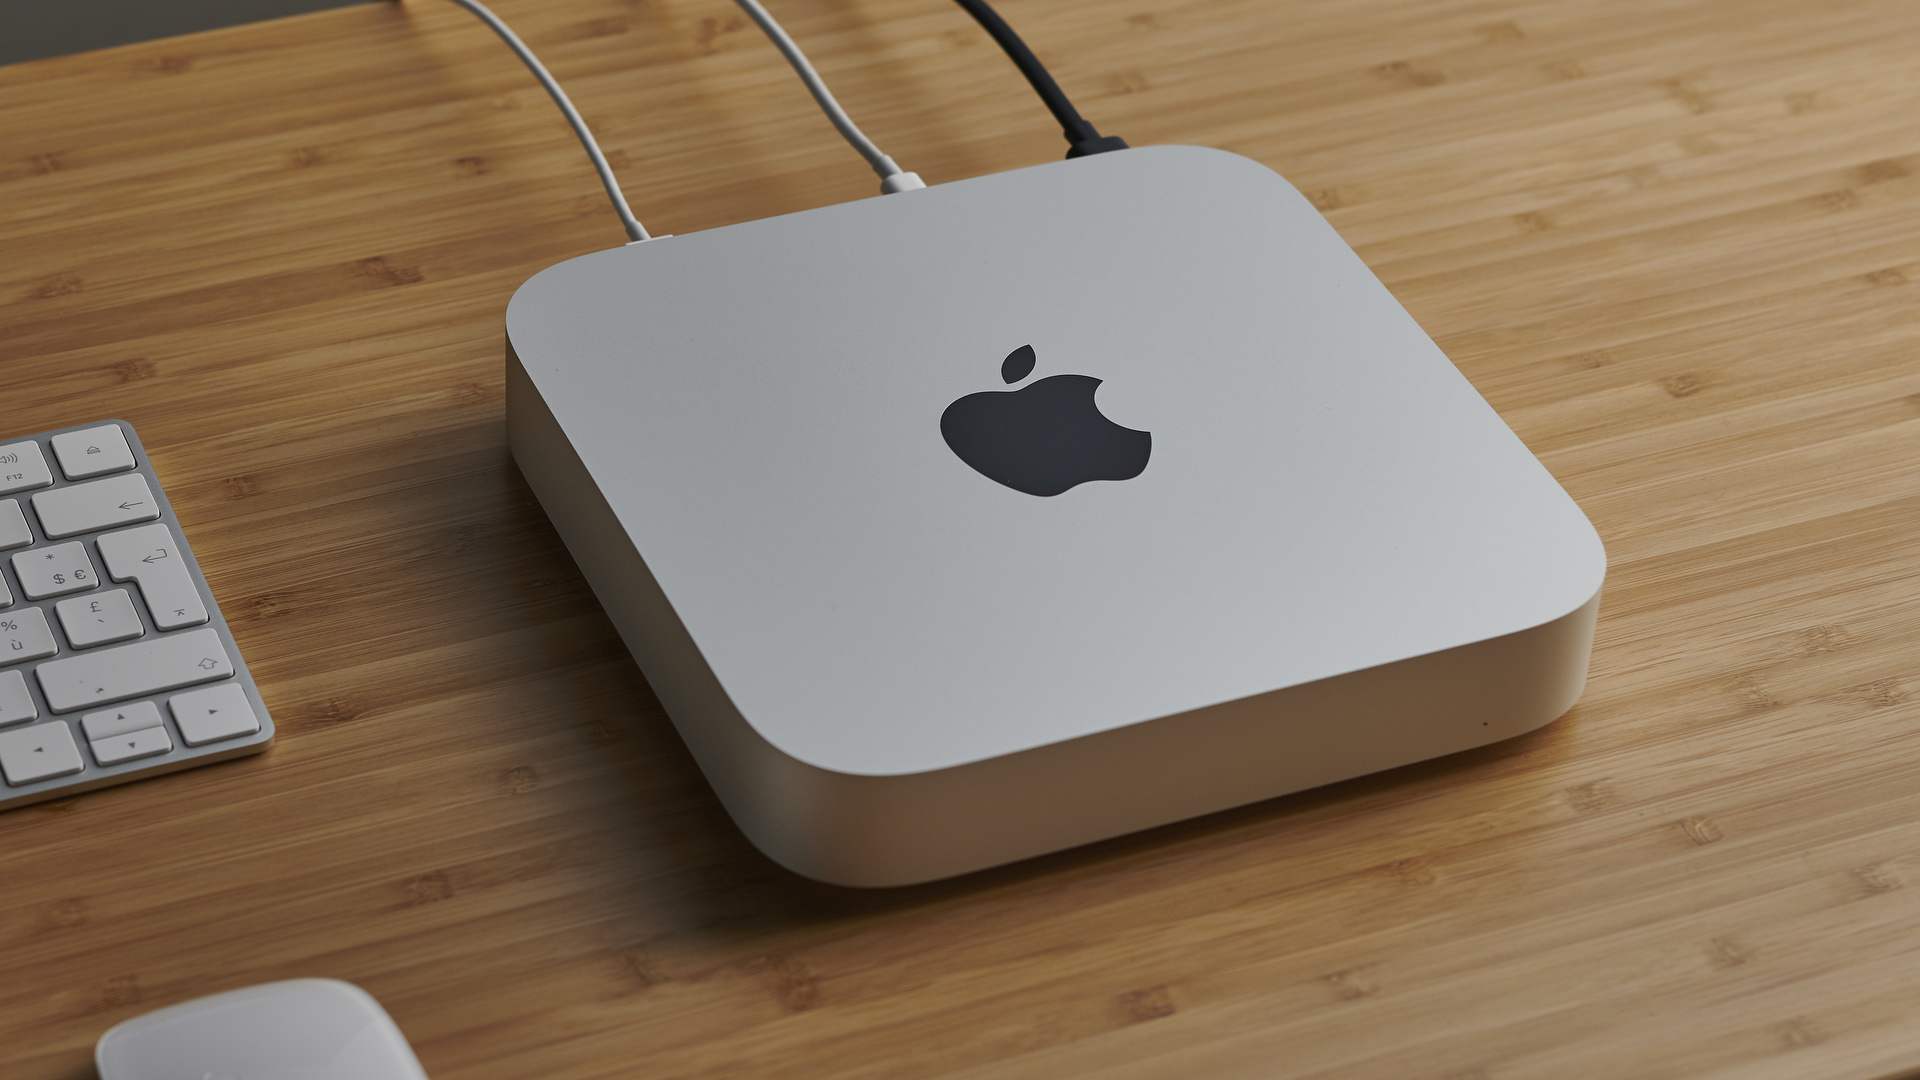 Mac Mini M1 16GB - New Apple Computer 